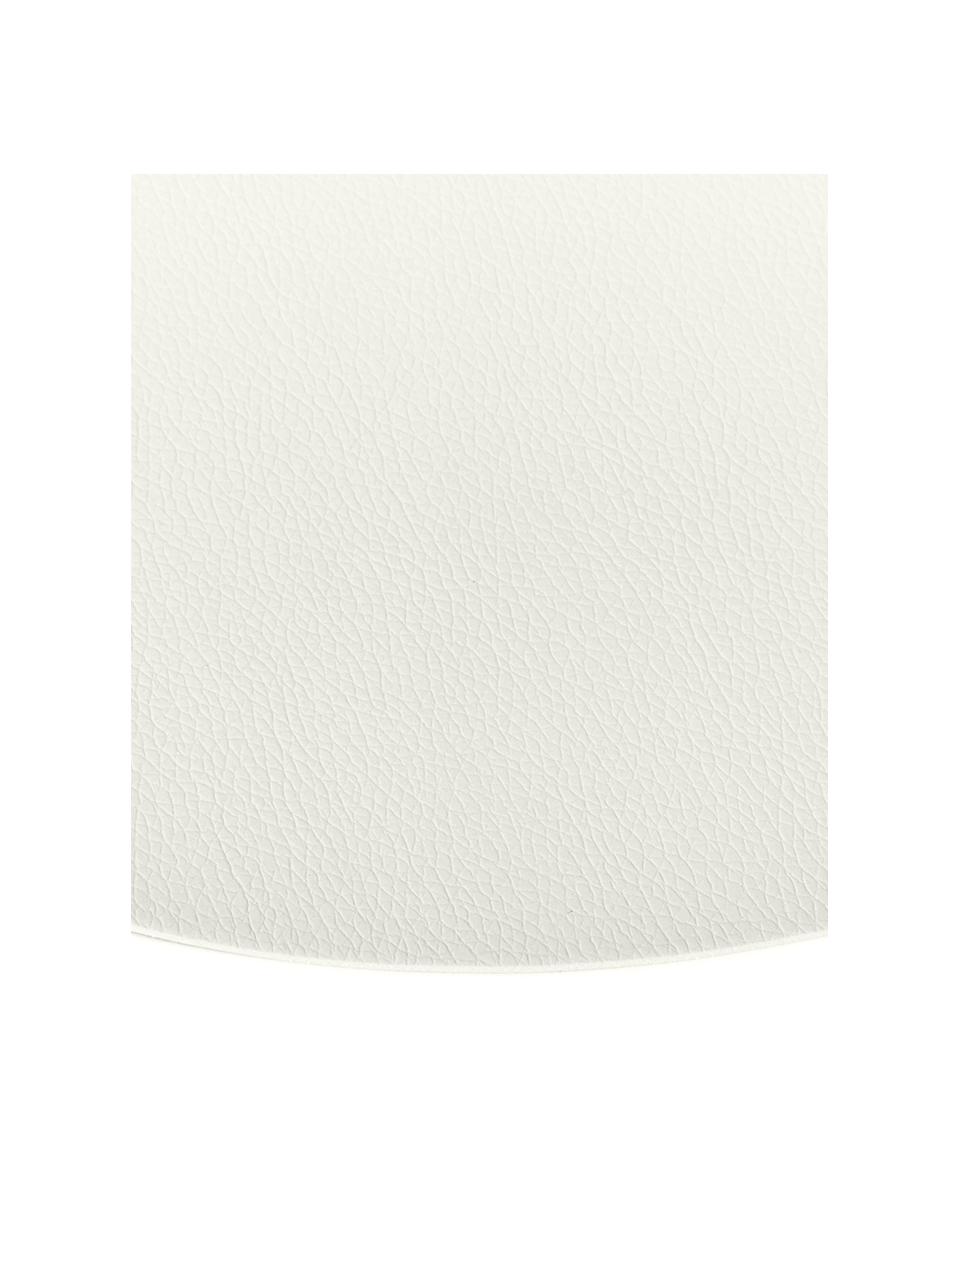 Ronde kunstleren placemats Pik, 2 stuks, Kunstleer (PVC), Wit, Ø 38 cm